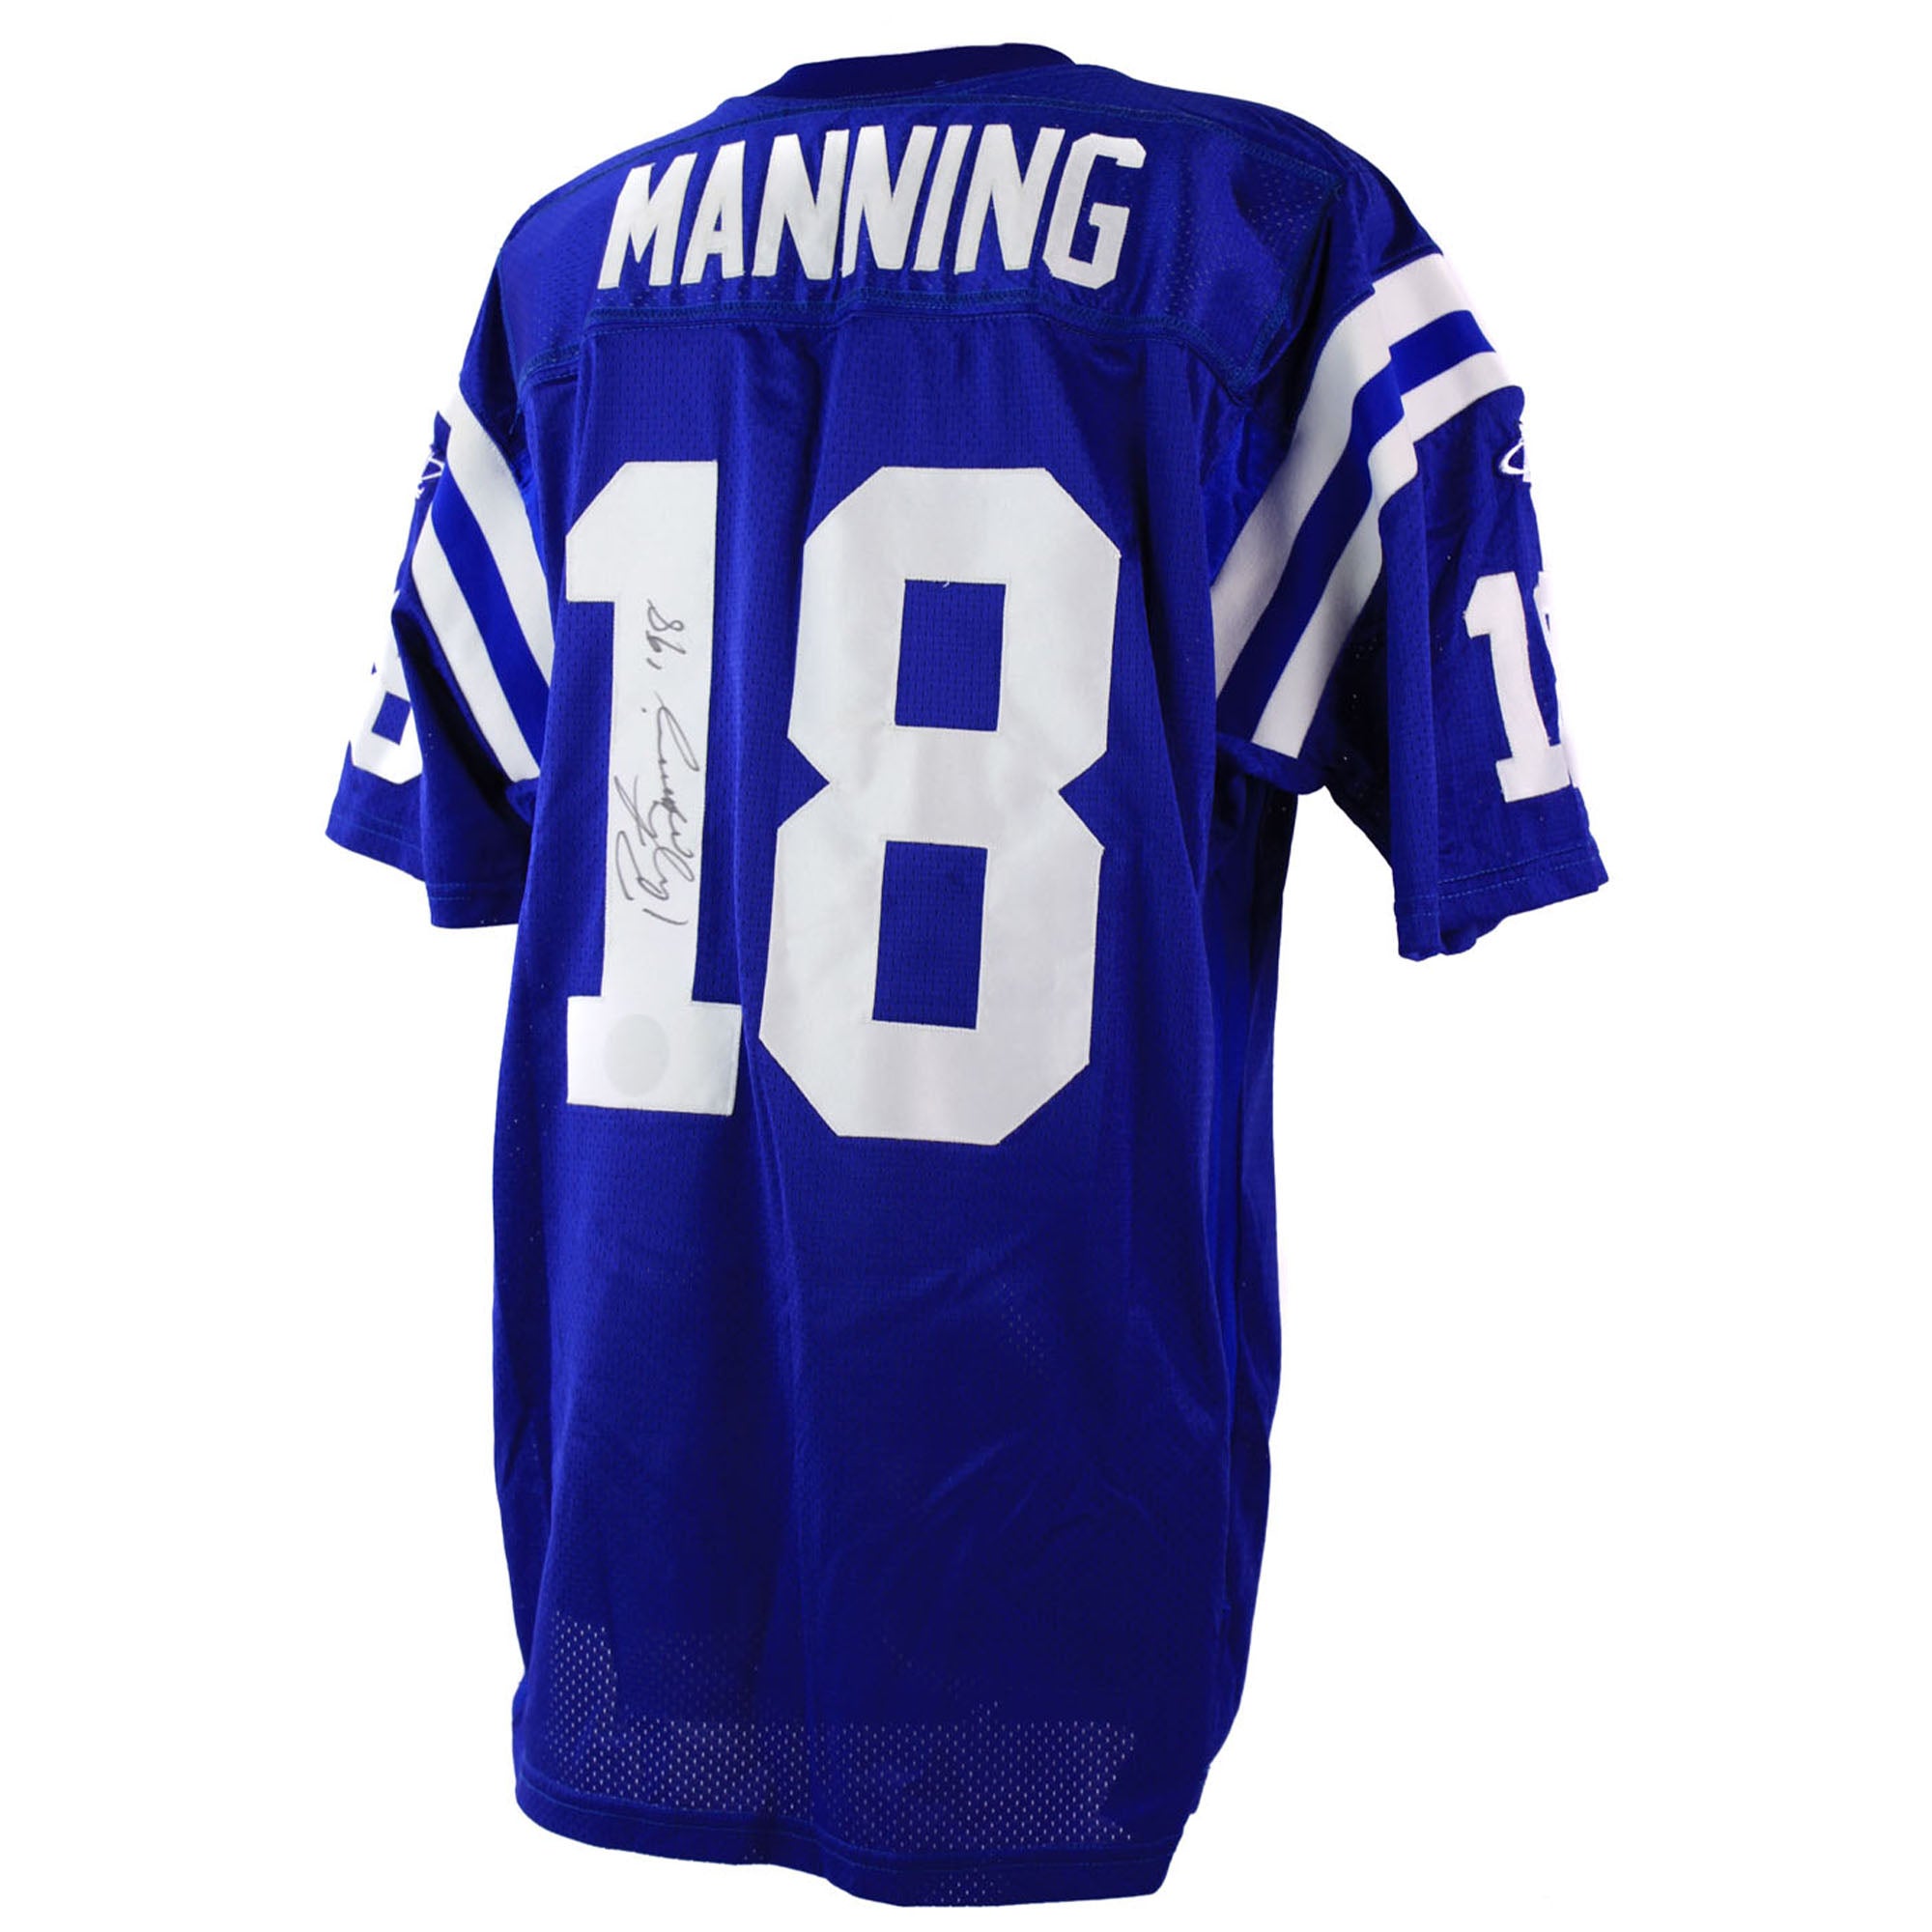 Peyton Manning 1998 Indianapolis Colts Game Worn Jersey